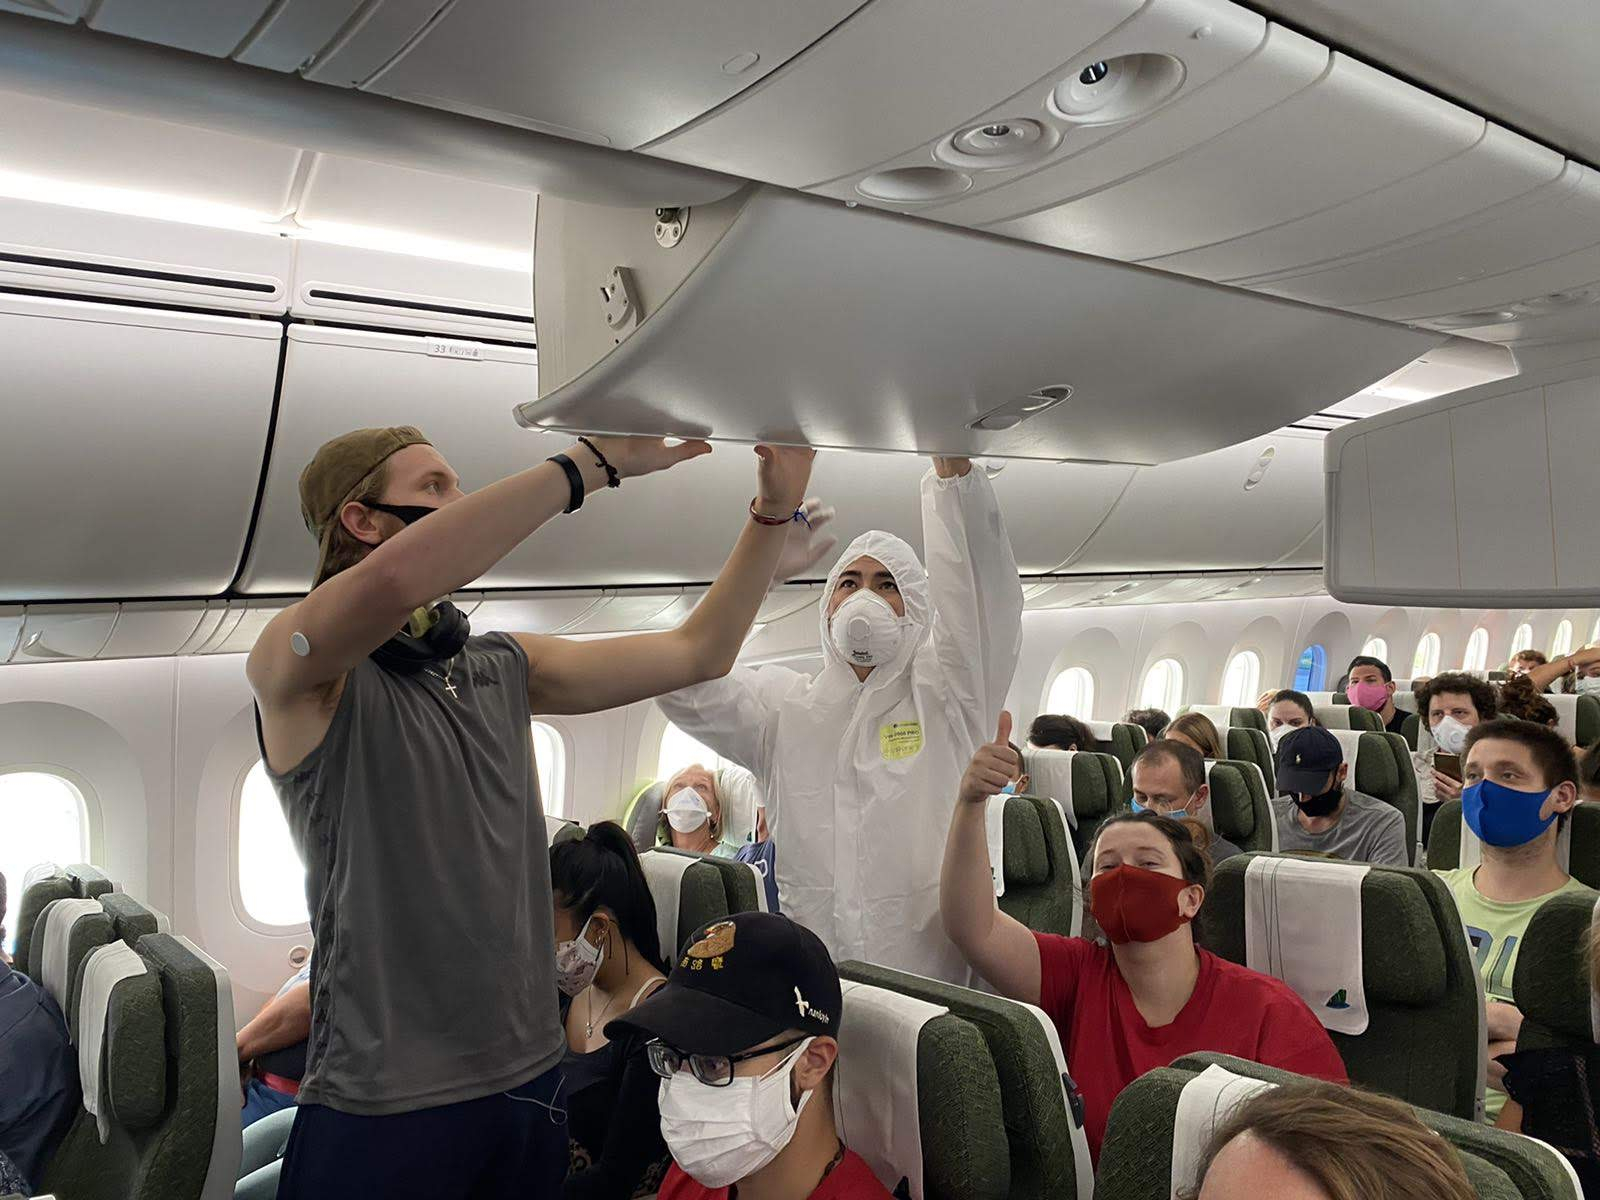 Sau khi vận chuyển thành công gần 300 hành khách quốc tịch Séc và EU hồi hương vào ngày 25/3, Bamboo Airways tiếp tục triển khai chuyến bay nhân đạo đưa hơn 200 hành khách người Lít-va và EU vào ngày 31/3.